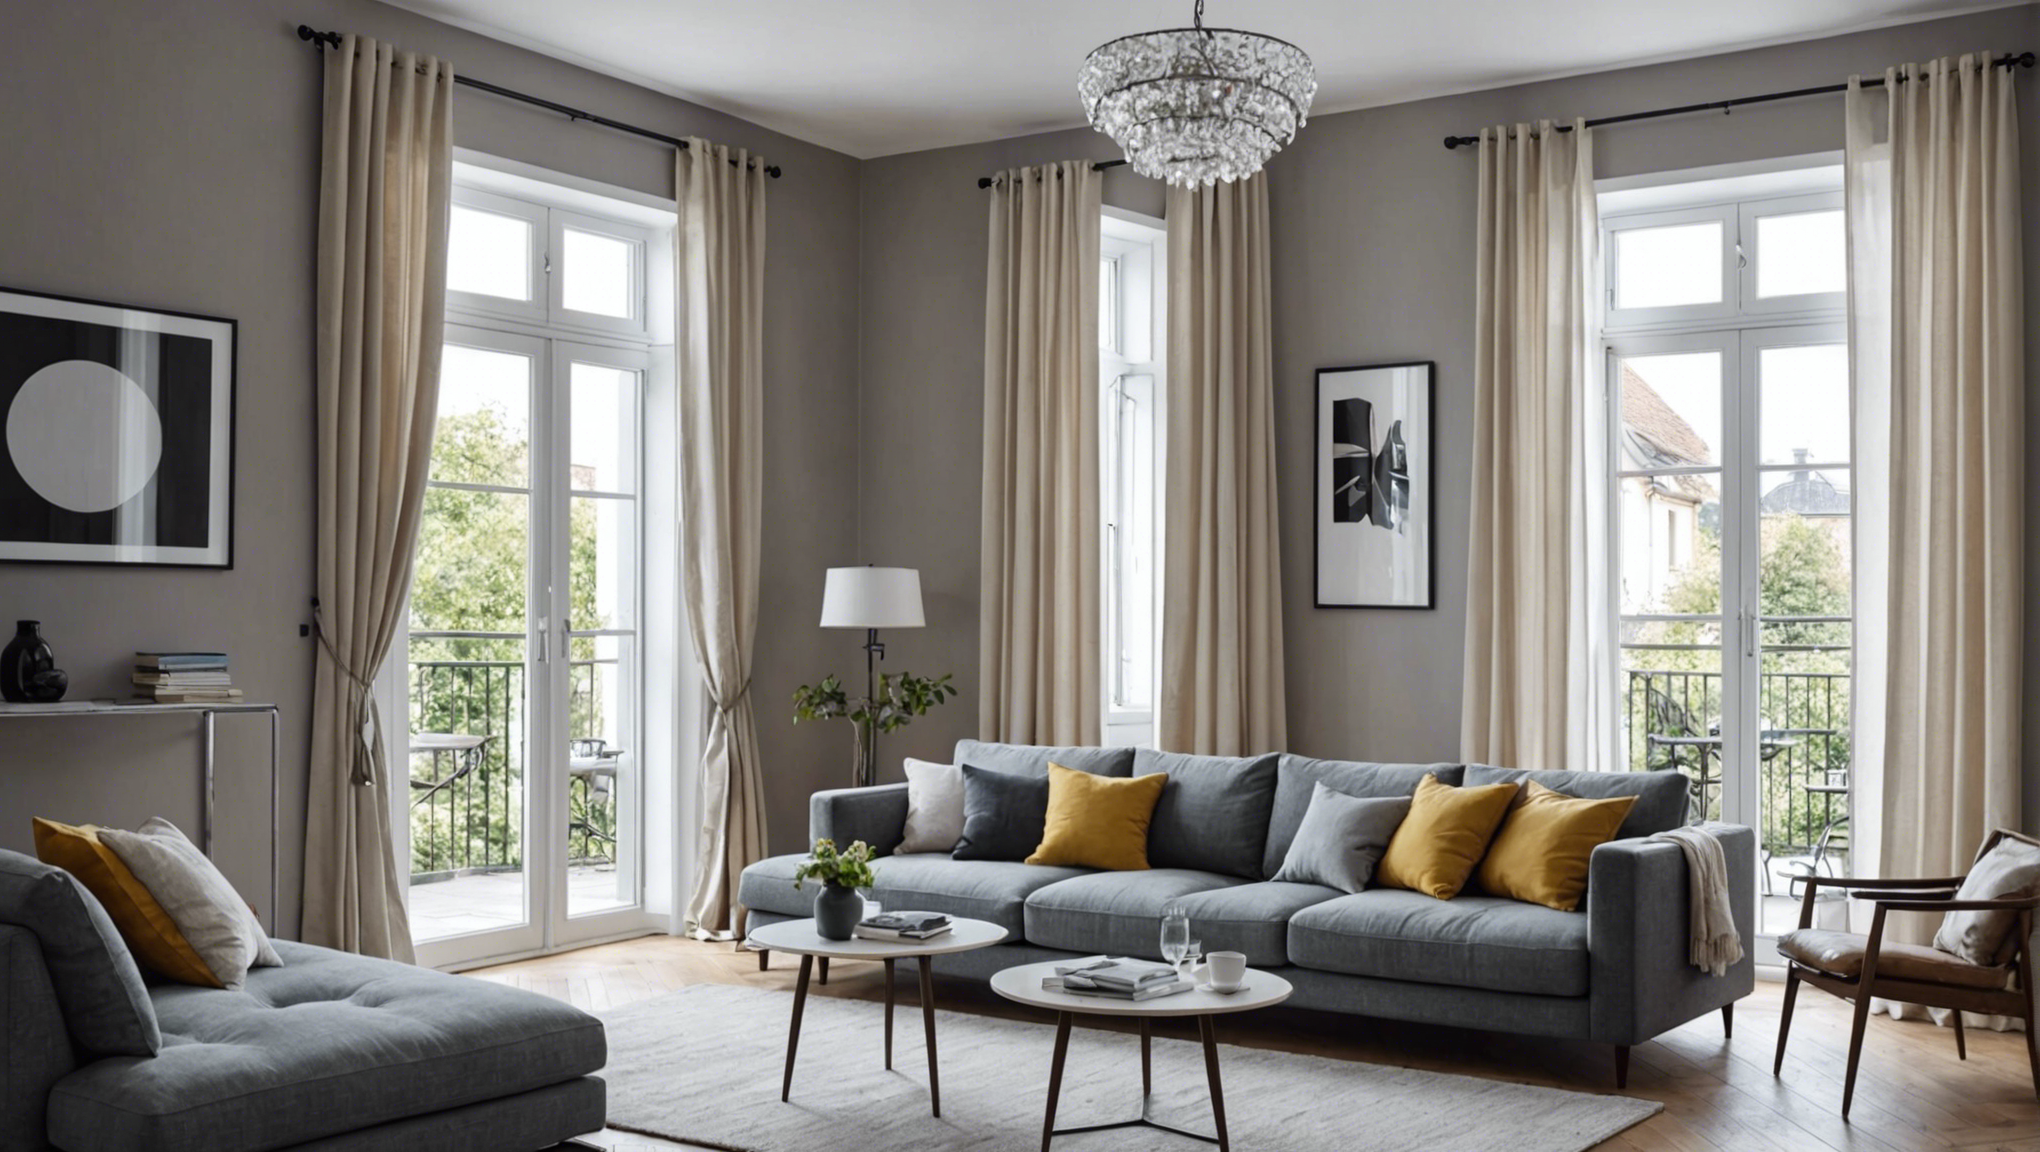 découvrez nos conseils pour choisir les rideaux parfaits pour vos fenêtres afin d'embellir votre intérieur et créer l'ambiance idéale.